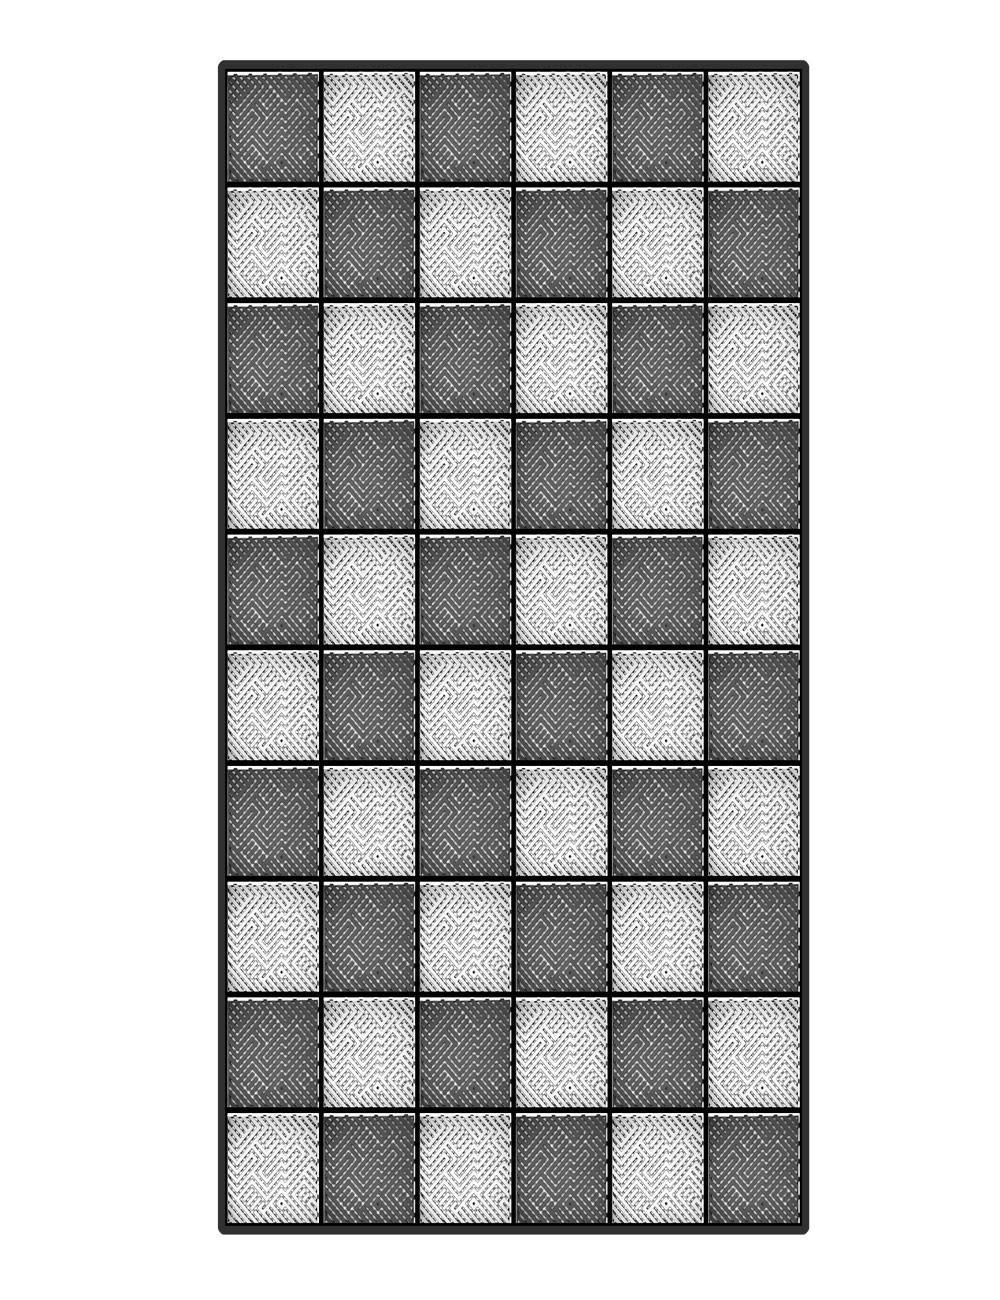 Kit dalles de sol damier pour garage - 15m² - 5 m x 3 m - Anthracite et blanc